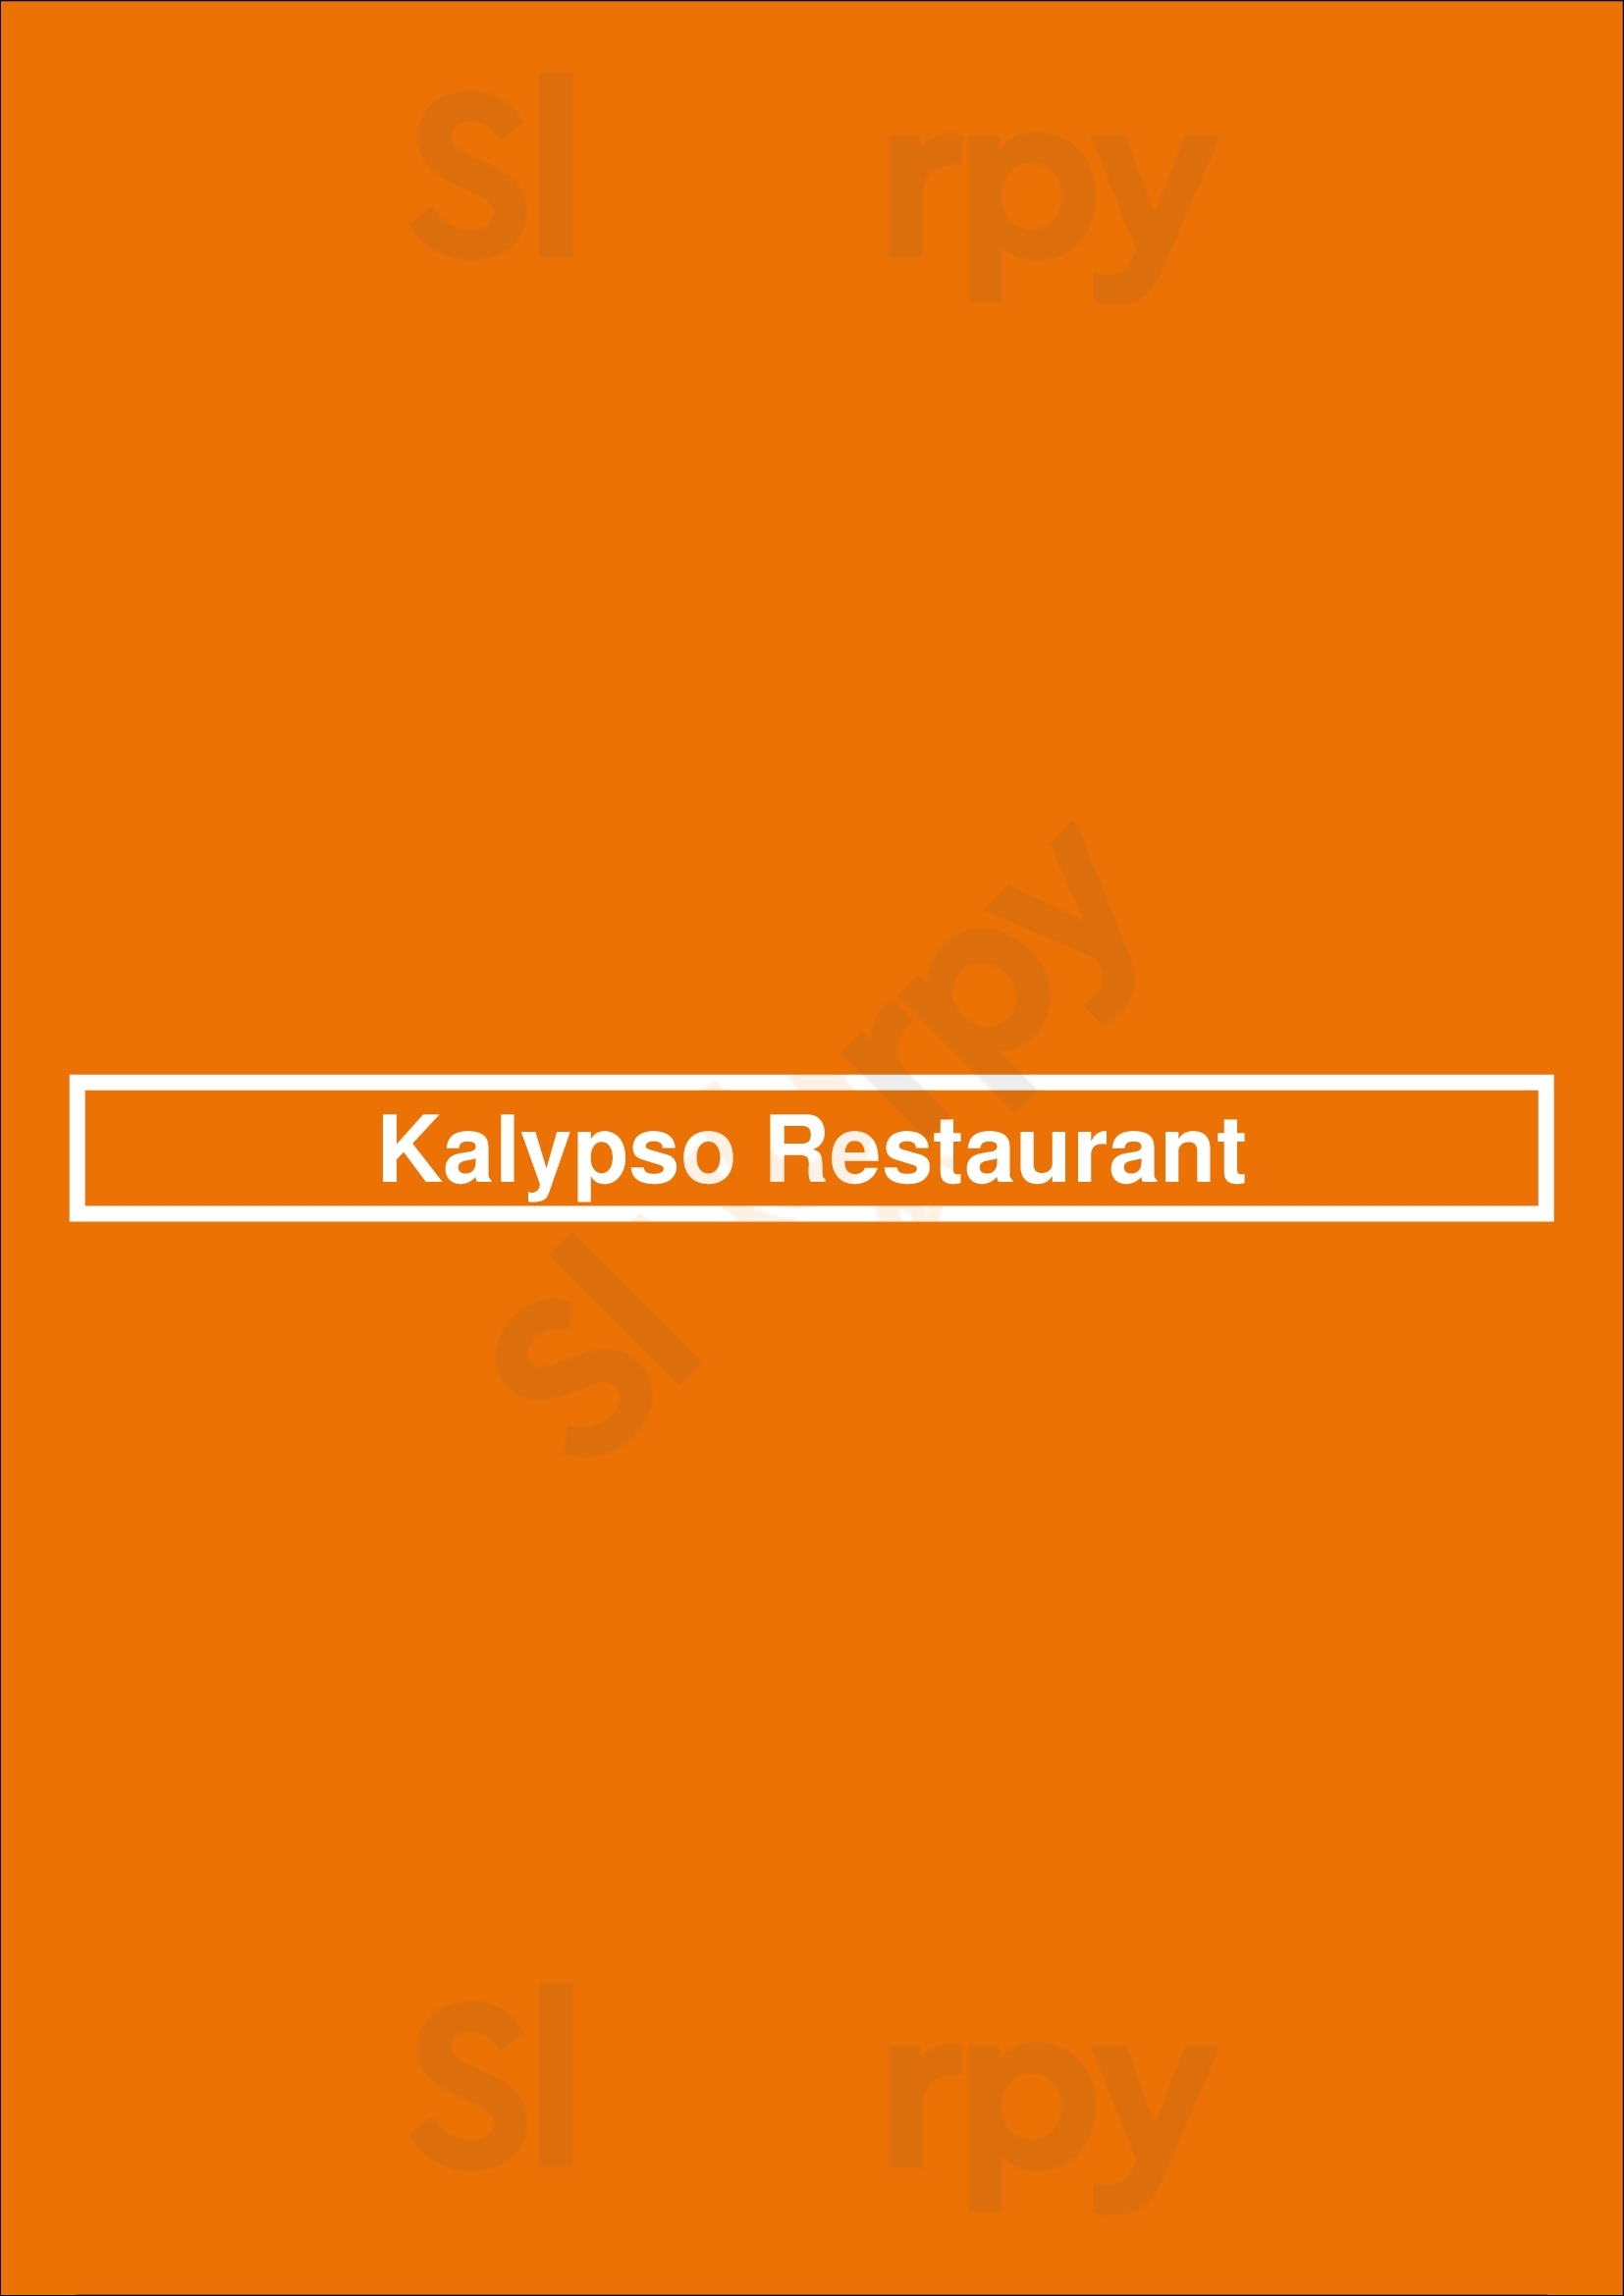 Kalypso Restaurant Limassol City Menu - 1